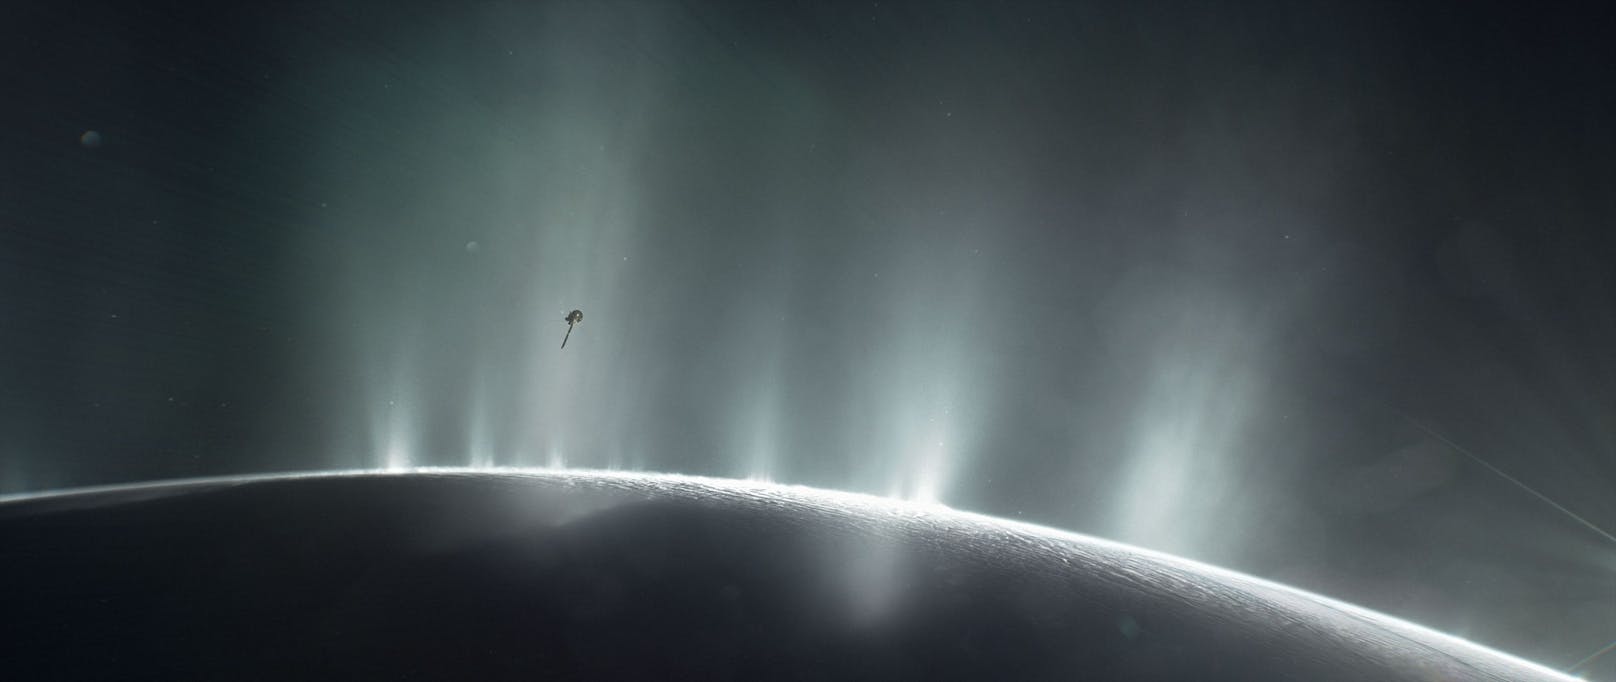 Mit dem Nachweis von Phosphor ist Forschenden auf dem Saturnmond Enceladus eine wichtige Entdeckung gelungen.